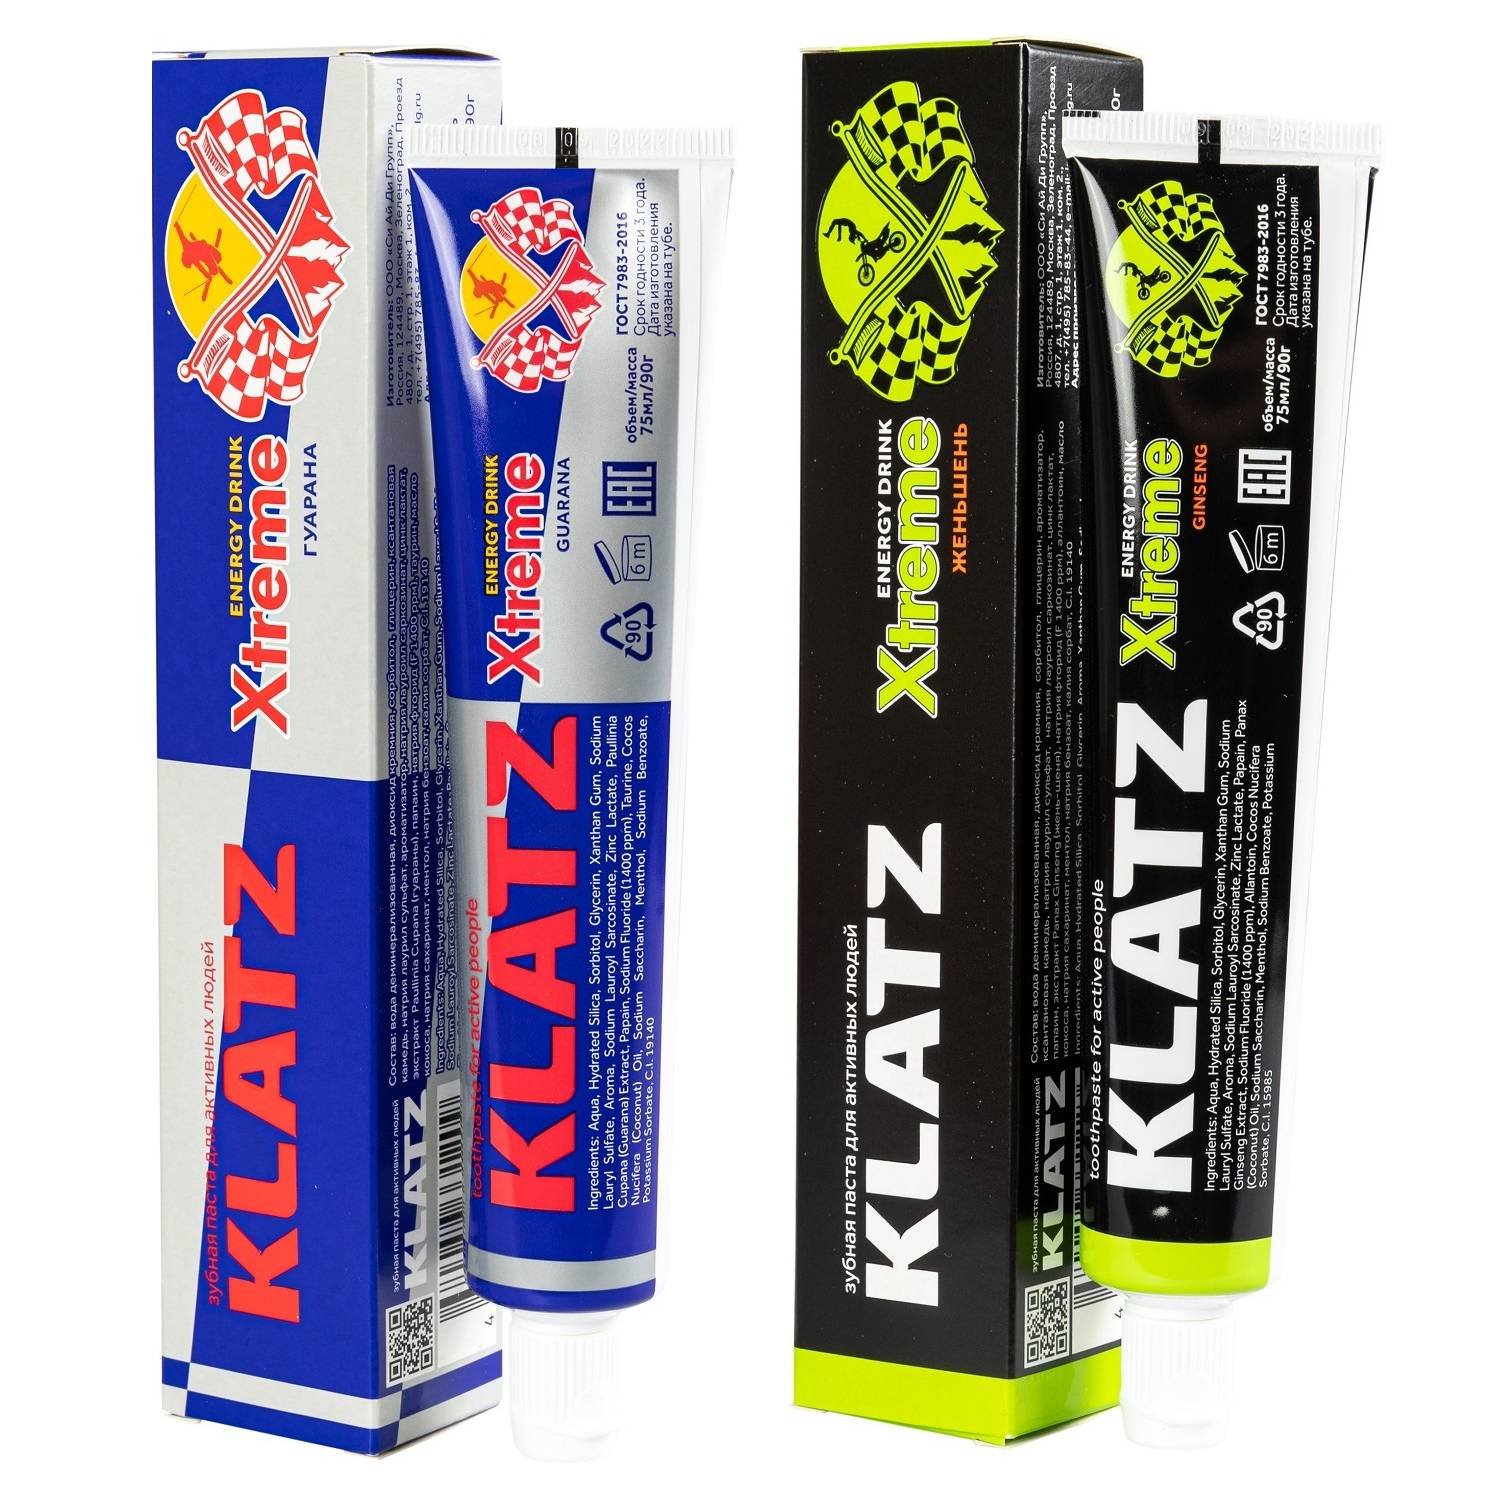 Klatz Набор зубных паст Xtreme Energy Drink: гуарана 75 мл + женьшень 75 мл (Klatz, Xtreme Energy Drink) зубная паста klatz для поколения z кола со льдом 75 мл